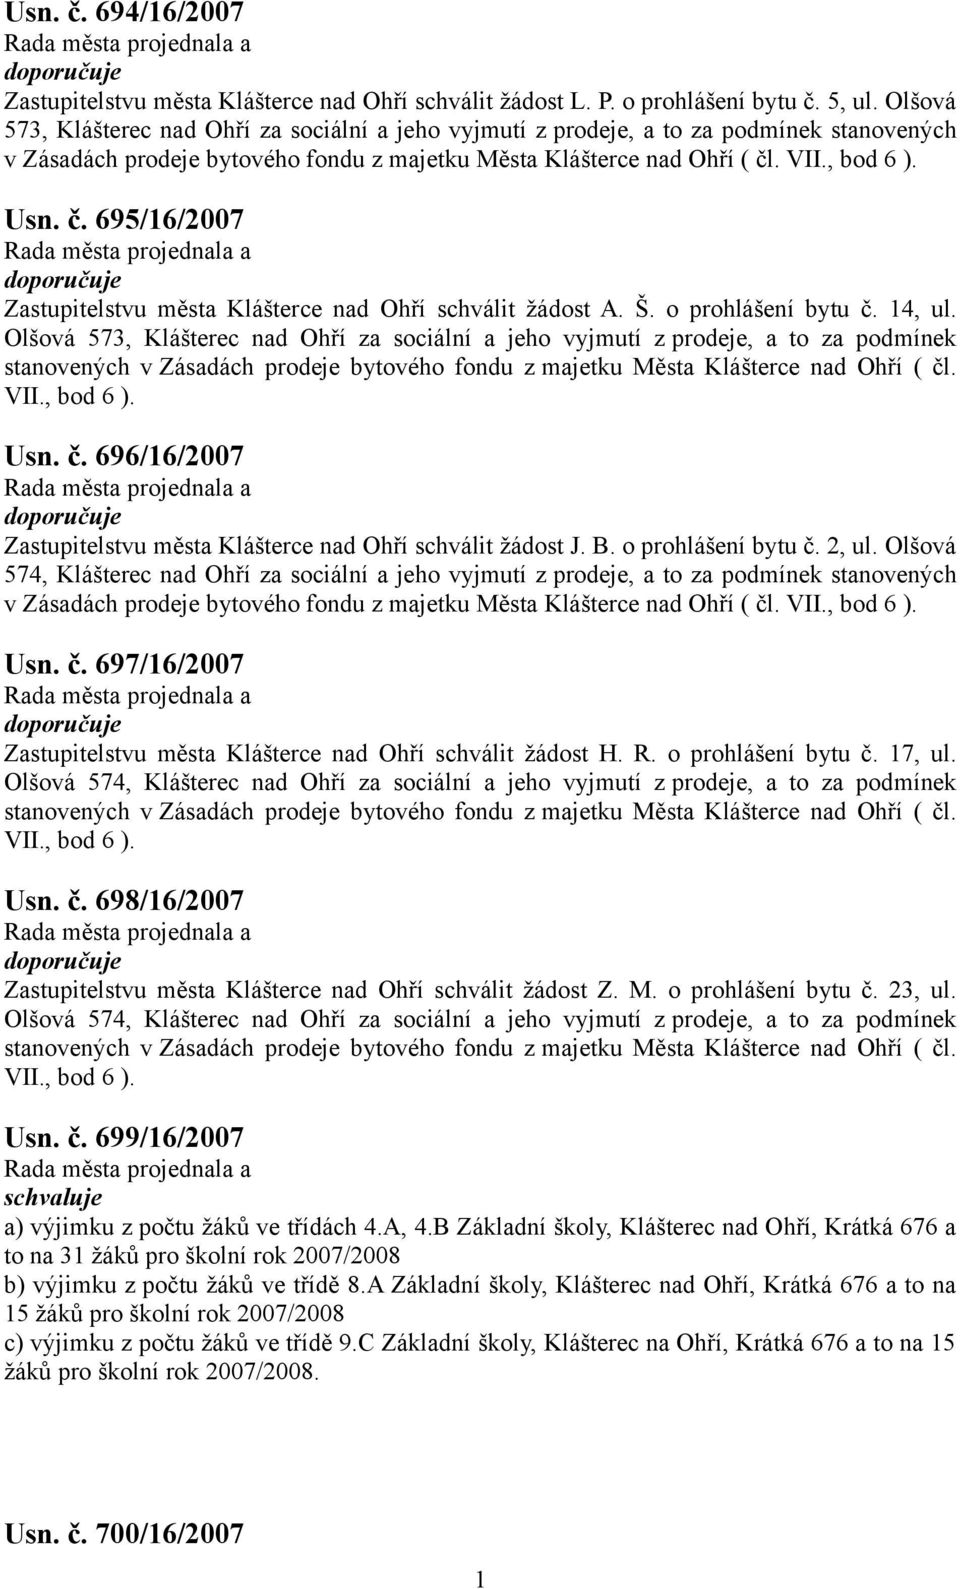 . Usn. č. 695/6/2007 Zastupitelstvu města Klášterce nad Ohří schválit žádost A. Š. o prohlášení bytu č. 4, ul.